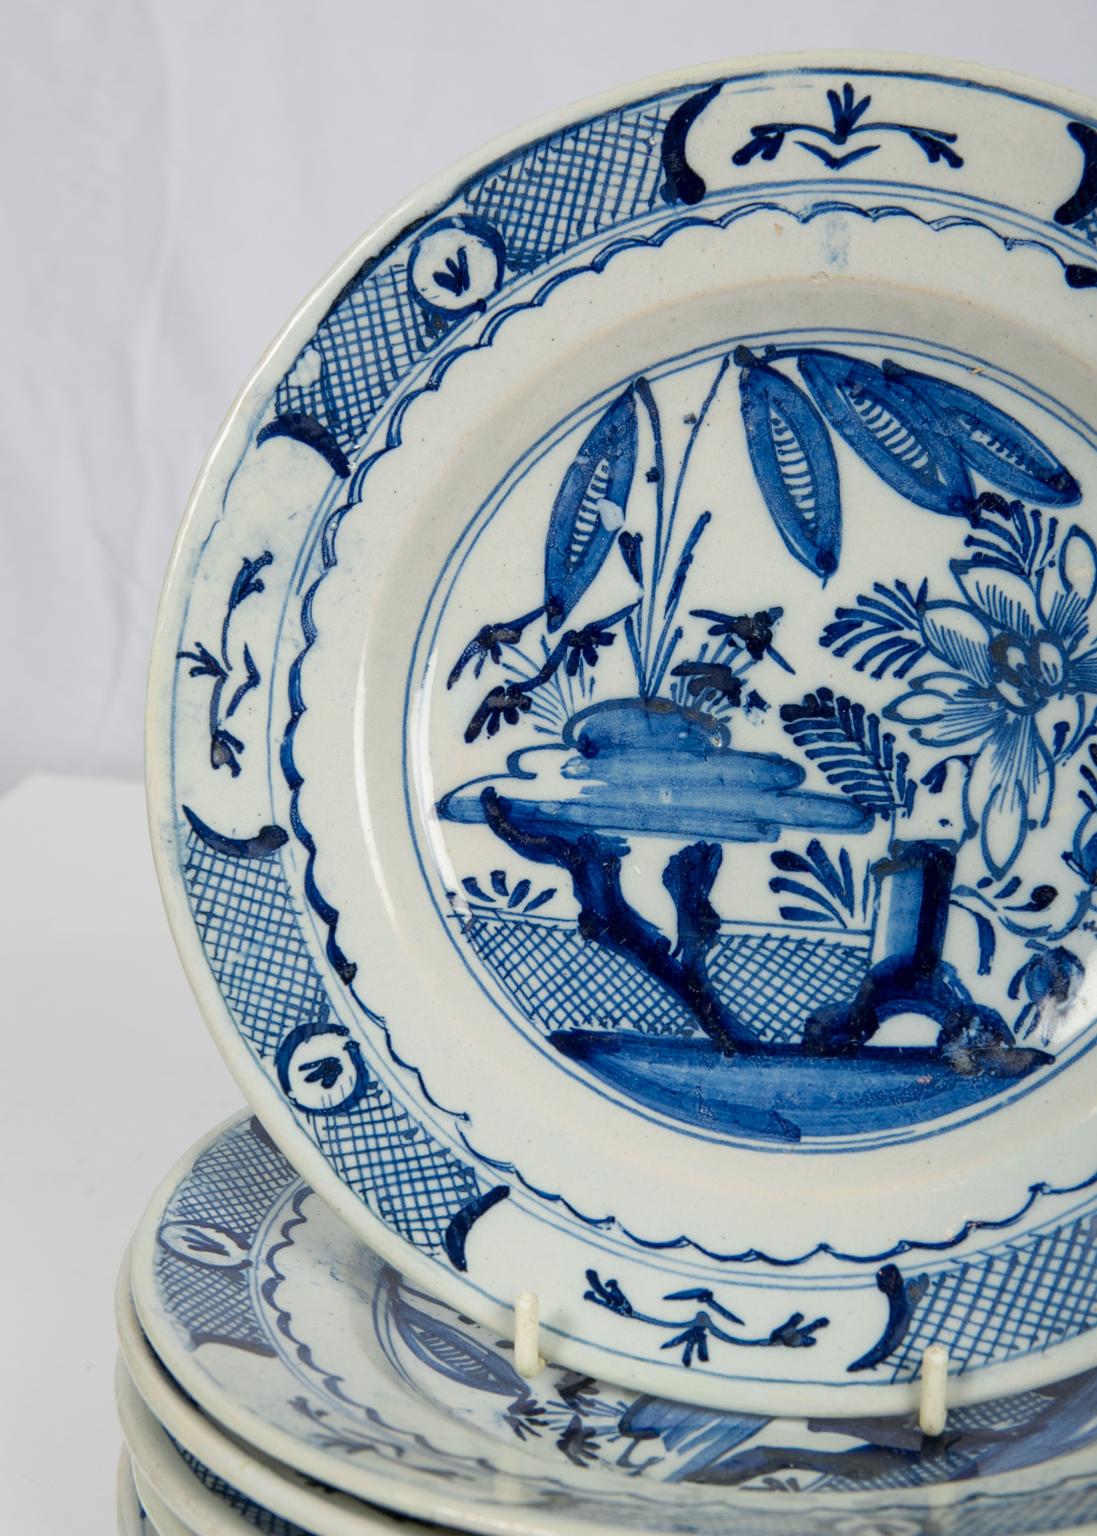 Six Delft Blue and White Dishes 18th Century circa 1785 (Delfter Blau)